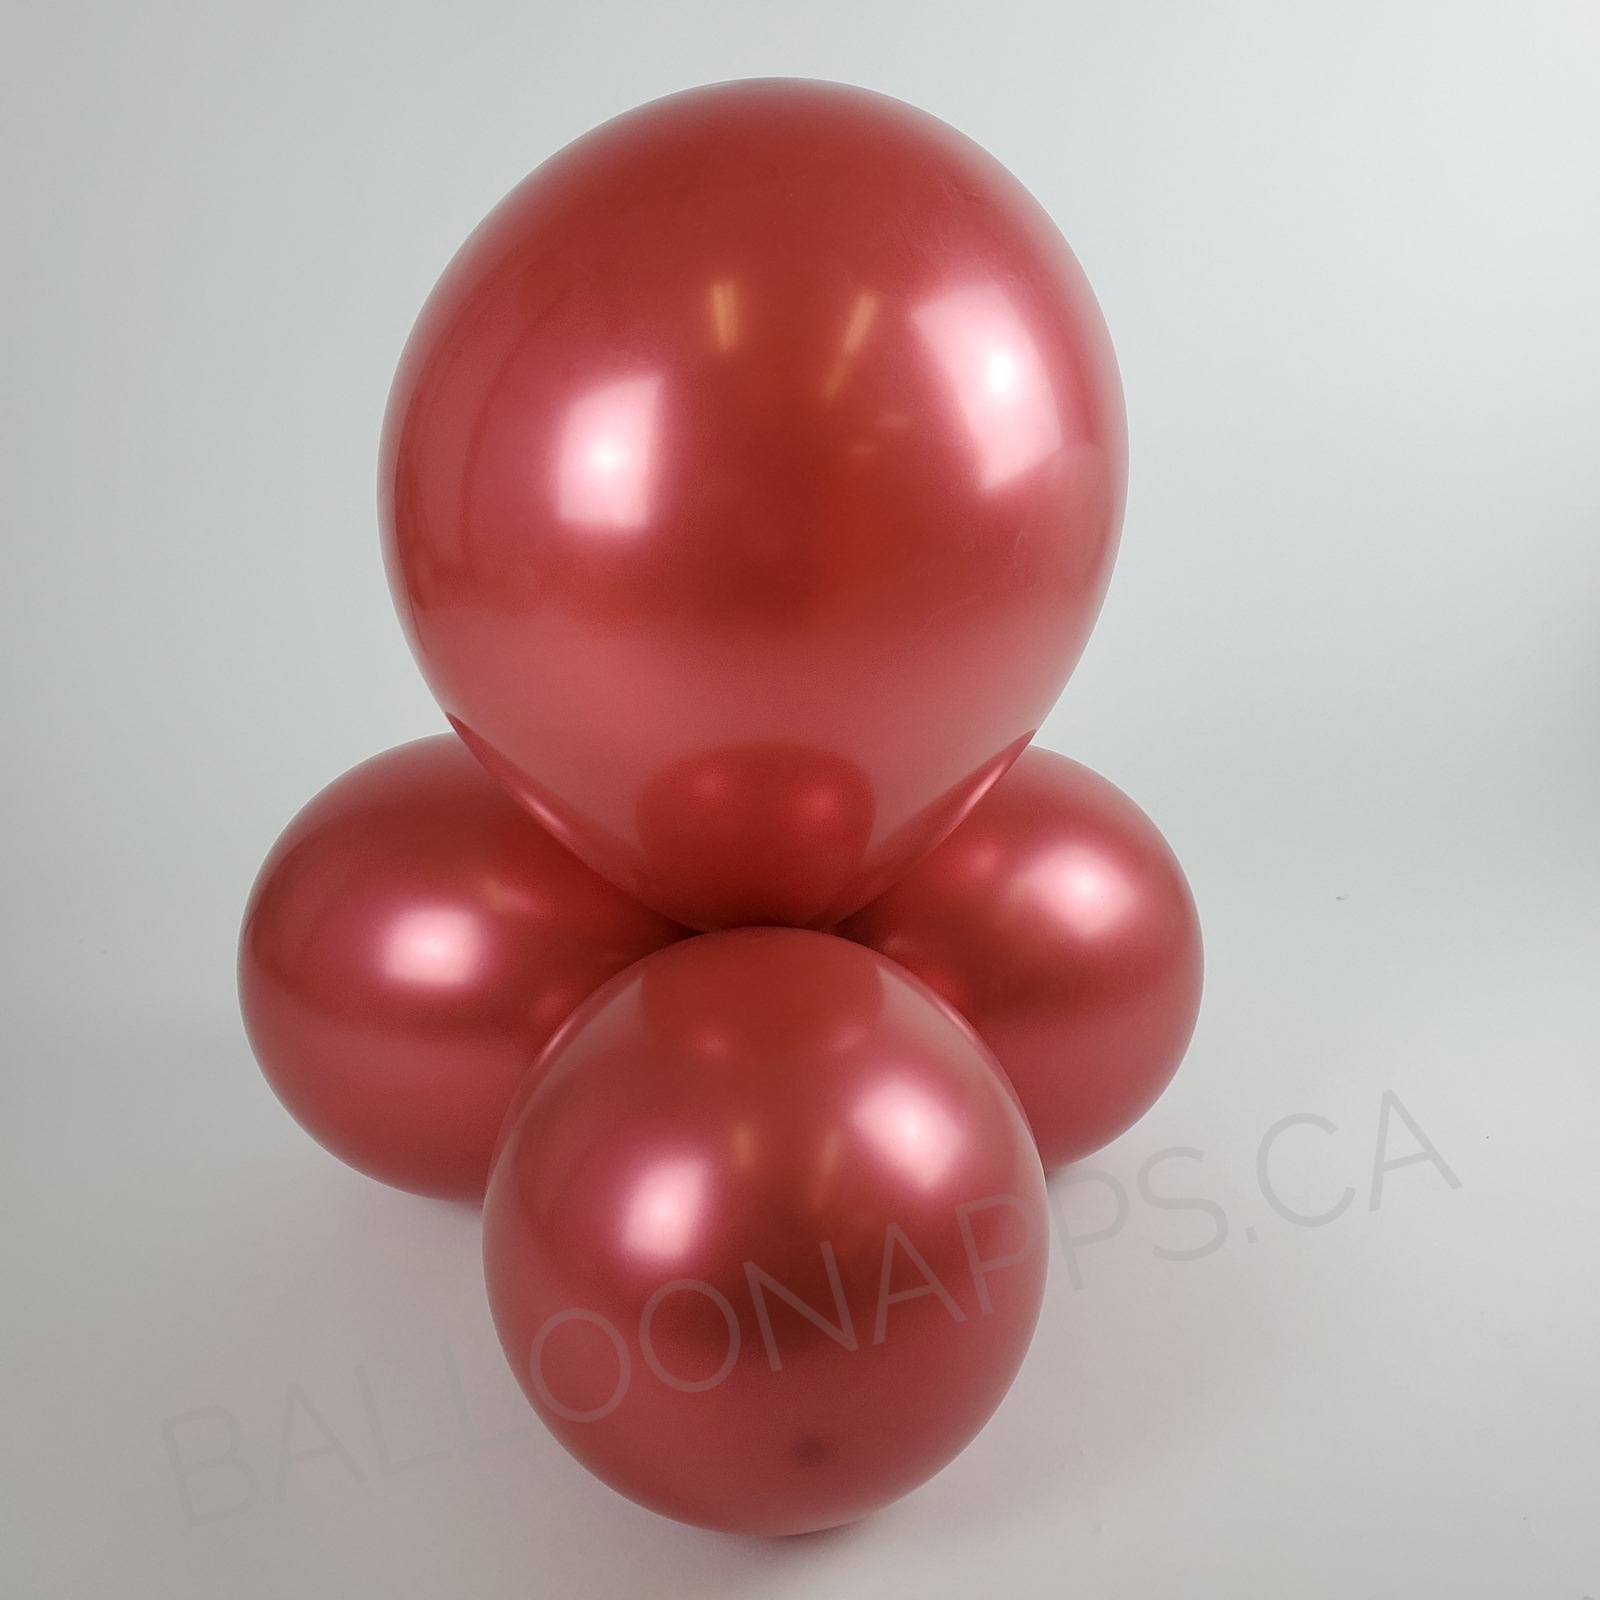 balloon texture BET (15) 18